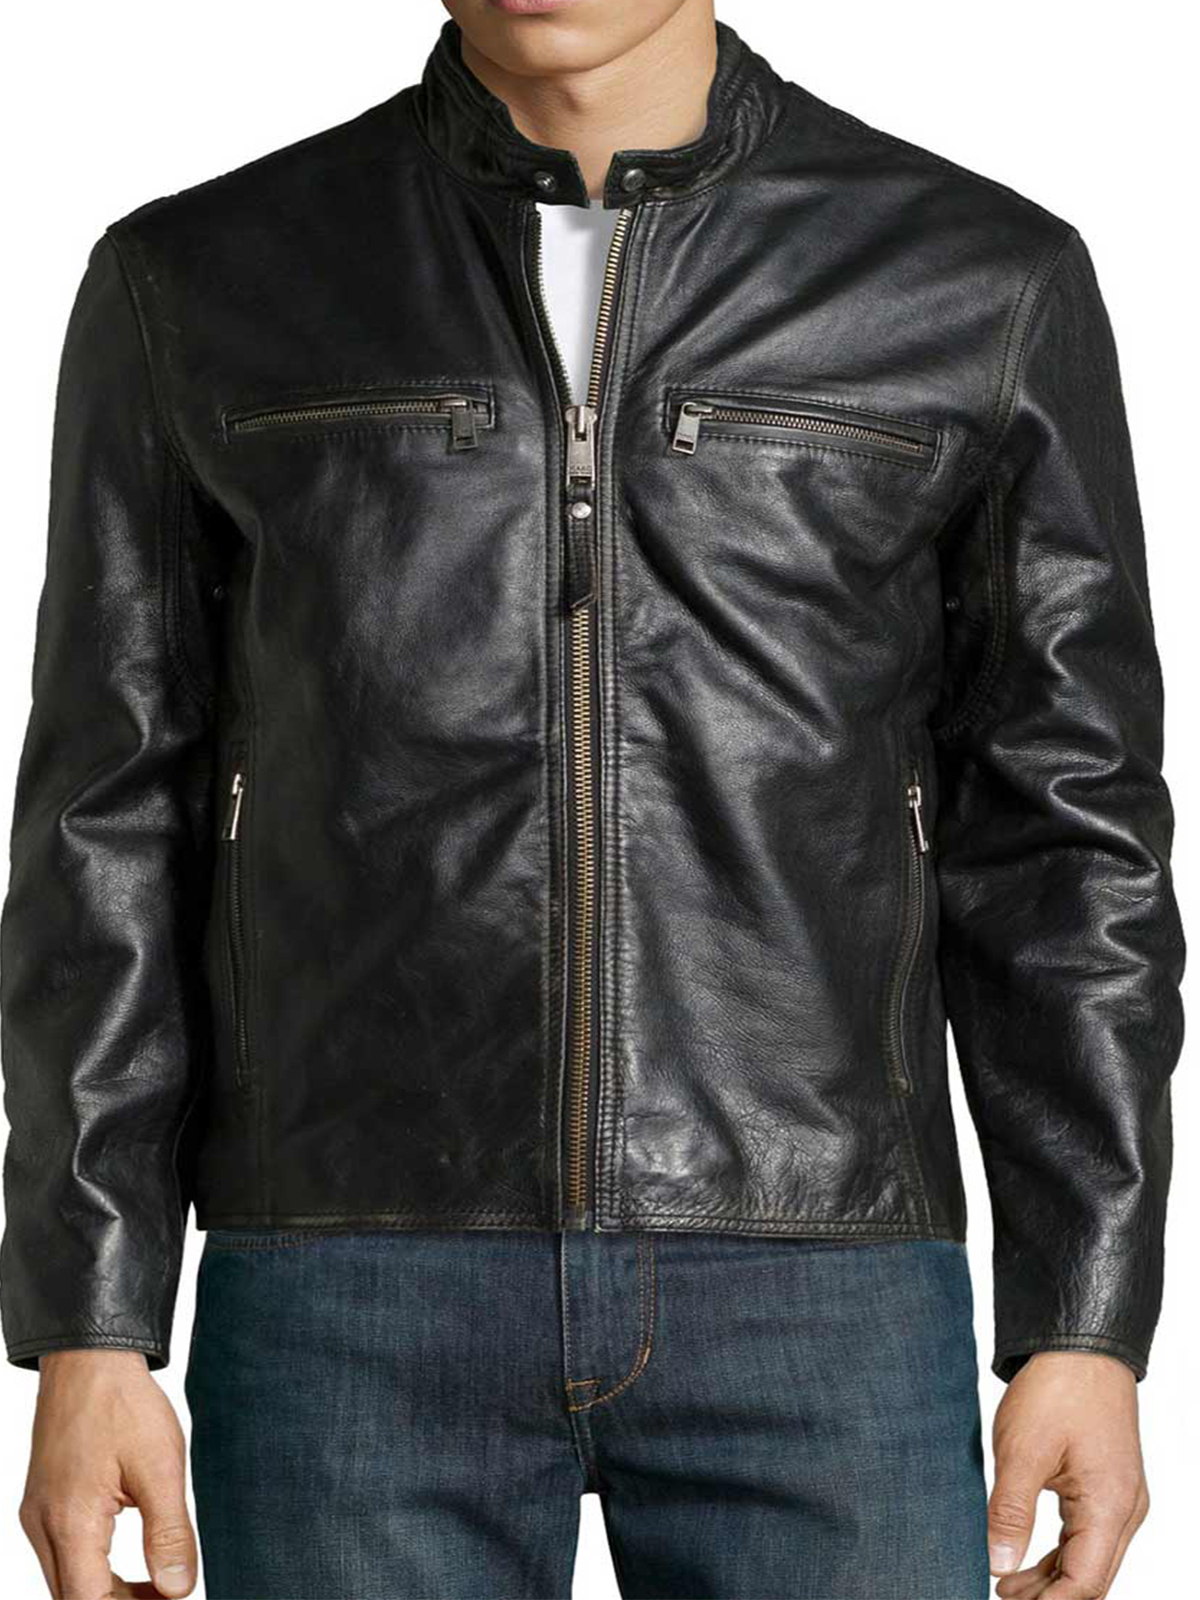 Joel Kinnaman Altered Carbon Leather Jacket